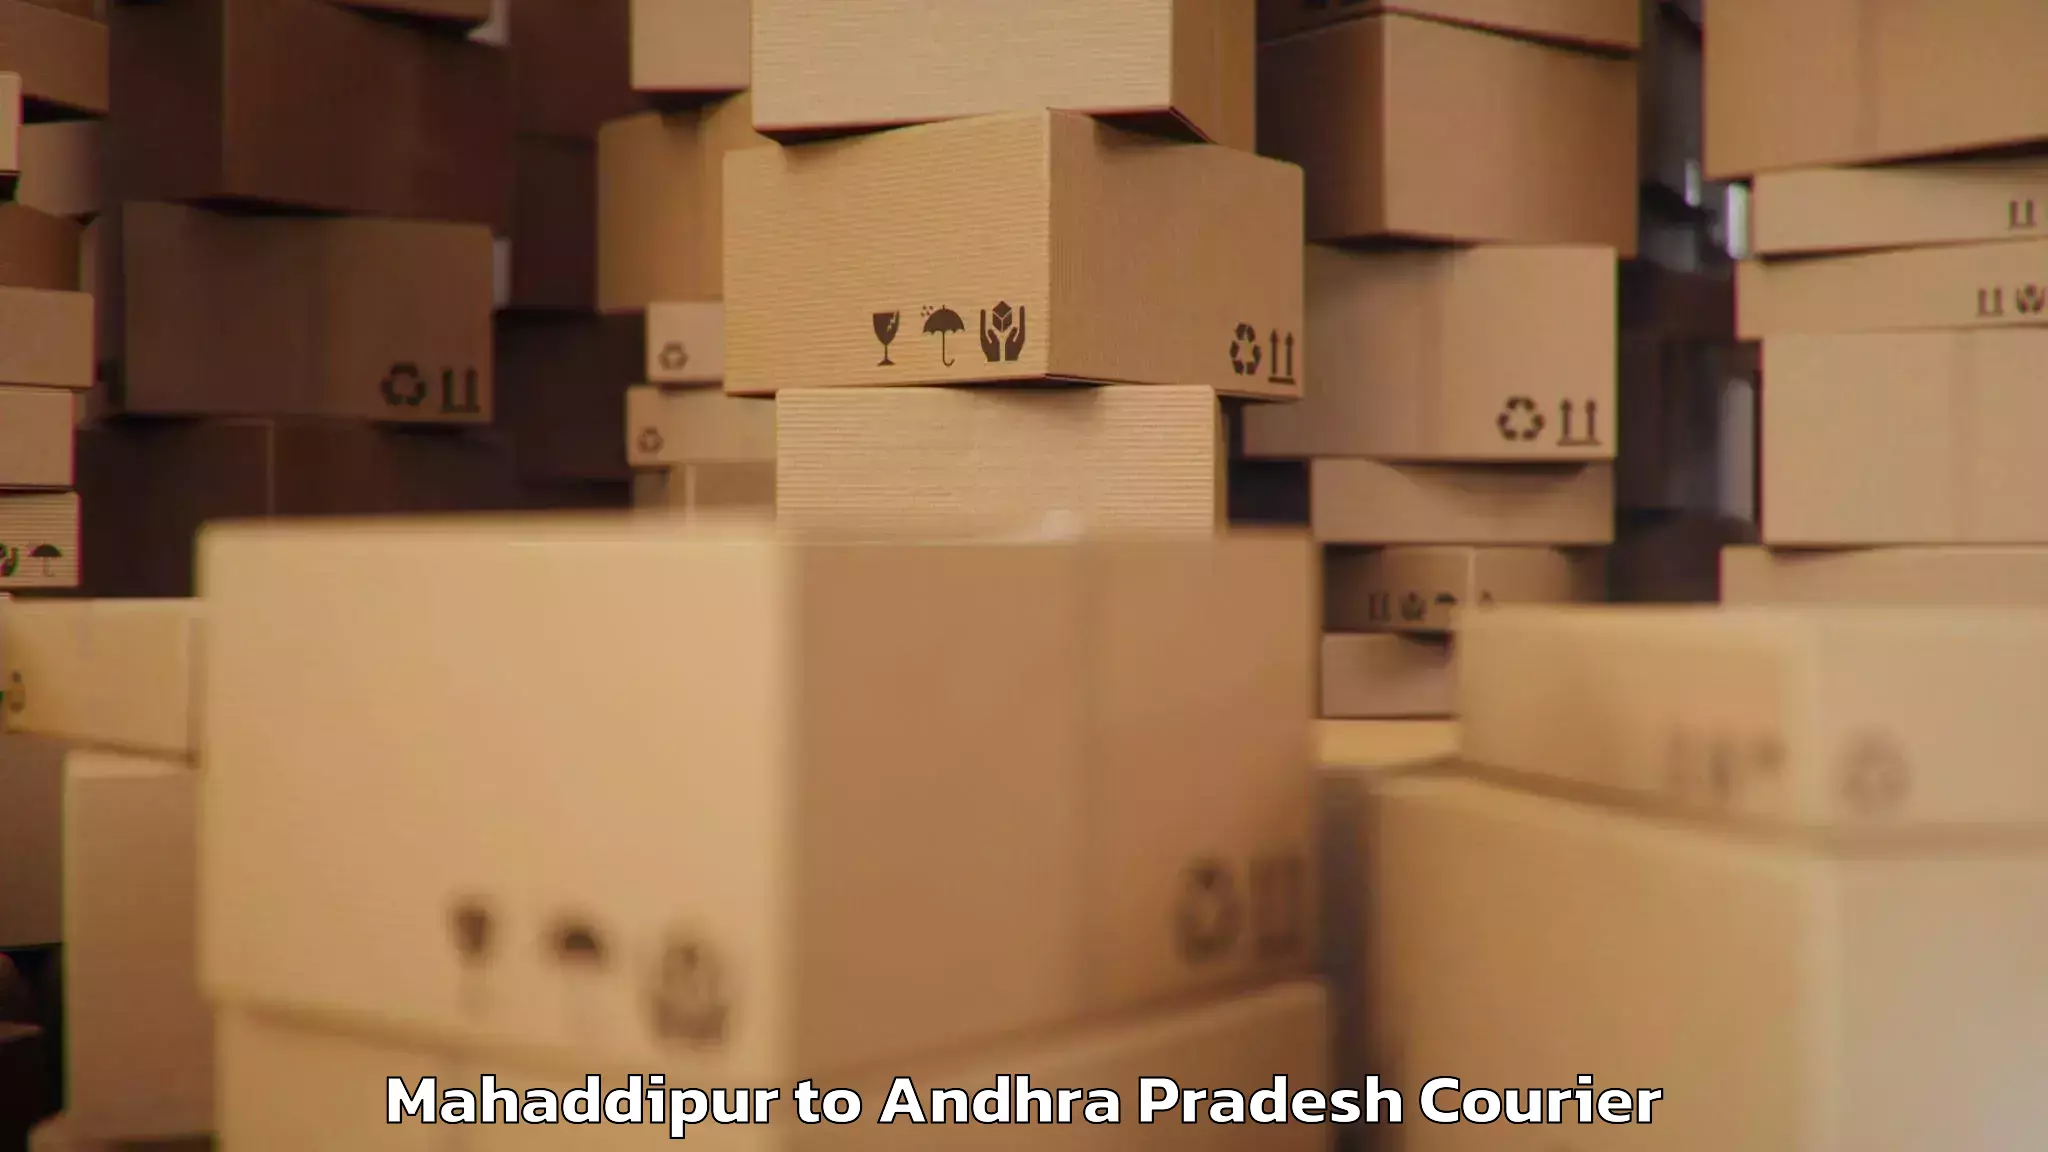 Customized luggage delivery Mahaddipur to Kandukur